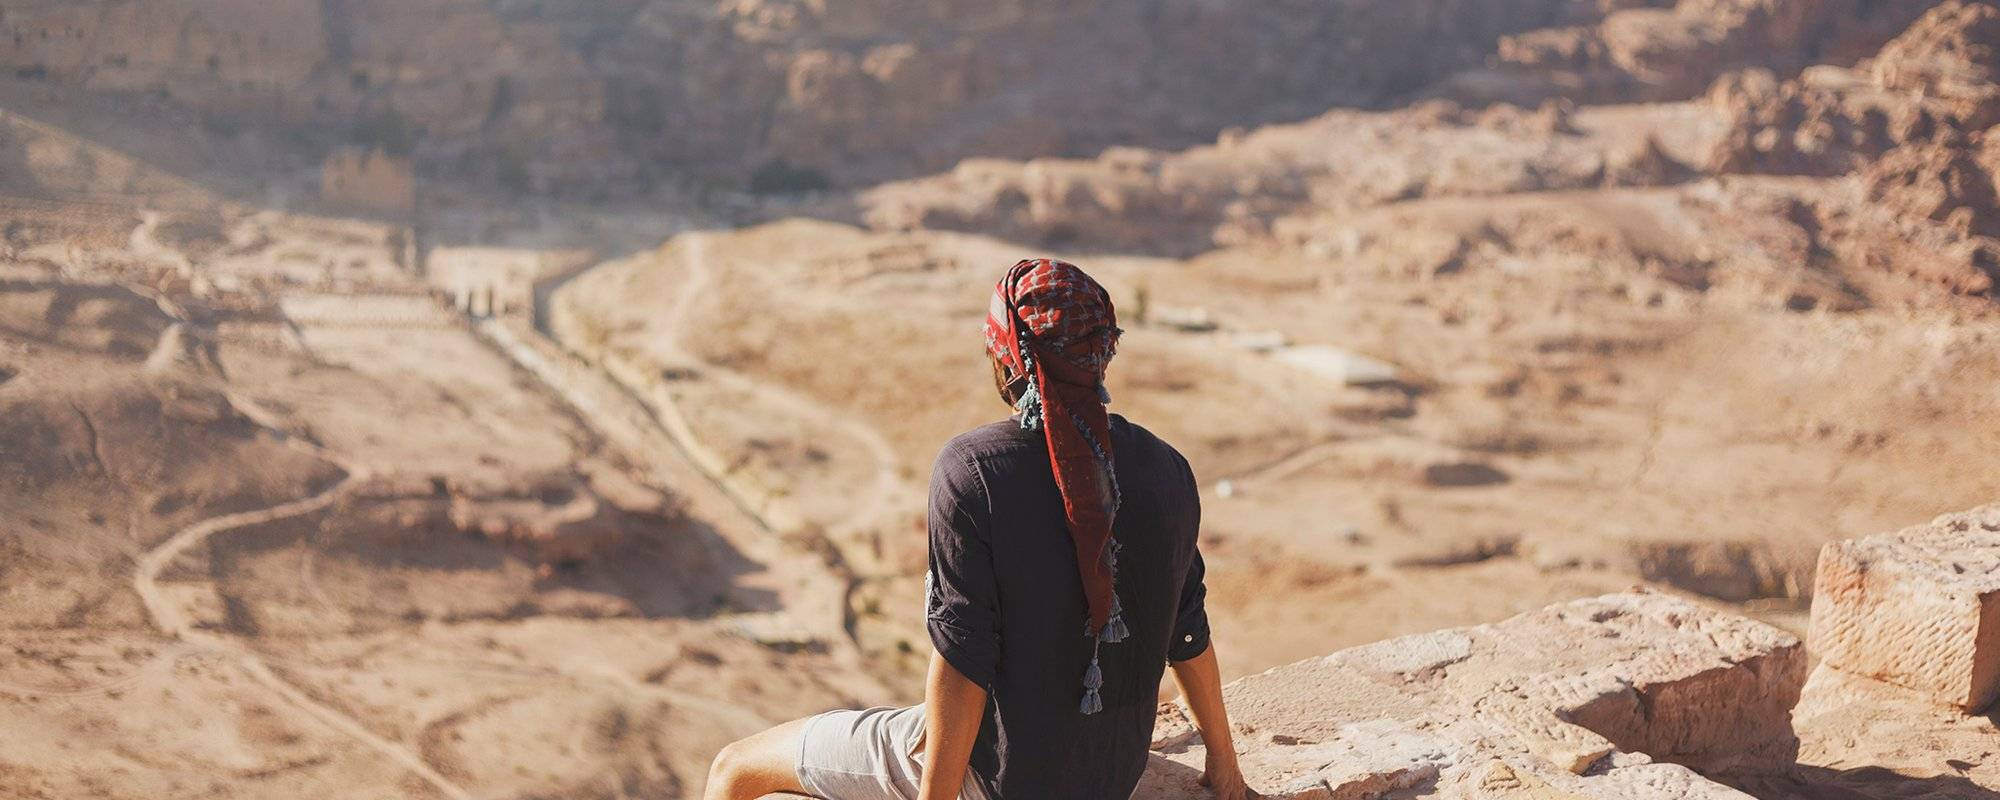 Jordan Series – Petra The Lost City